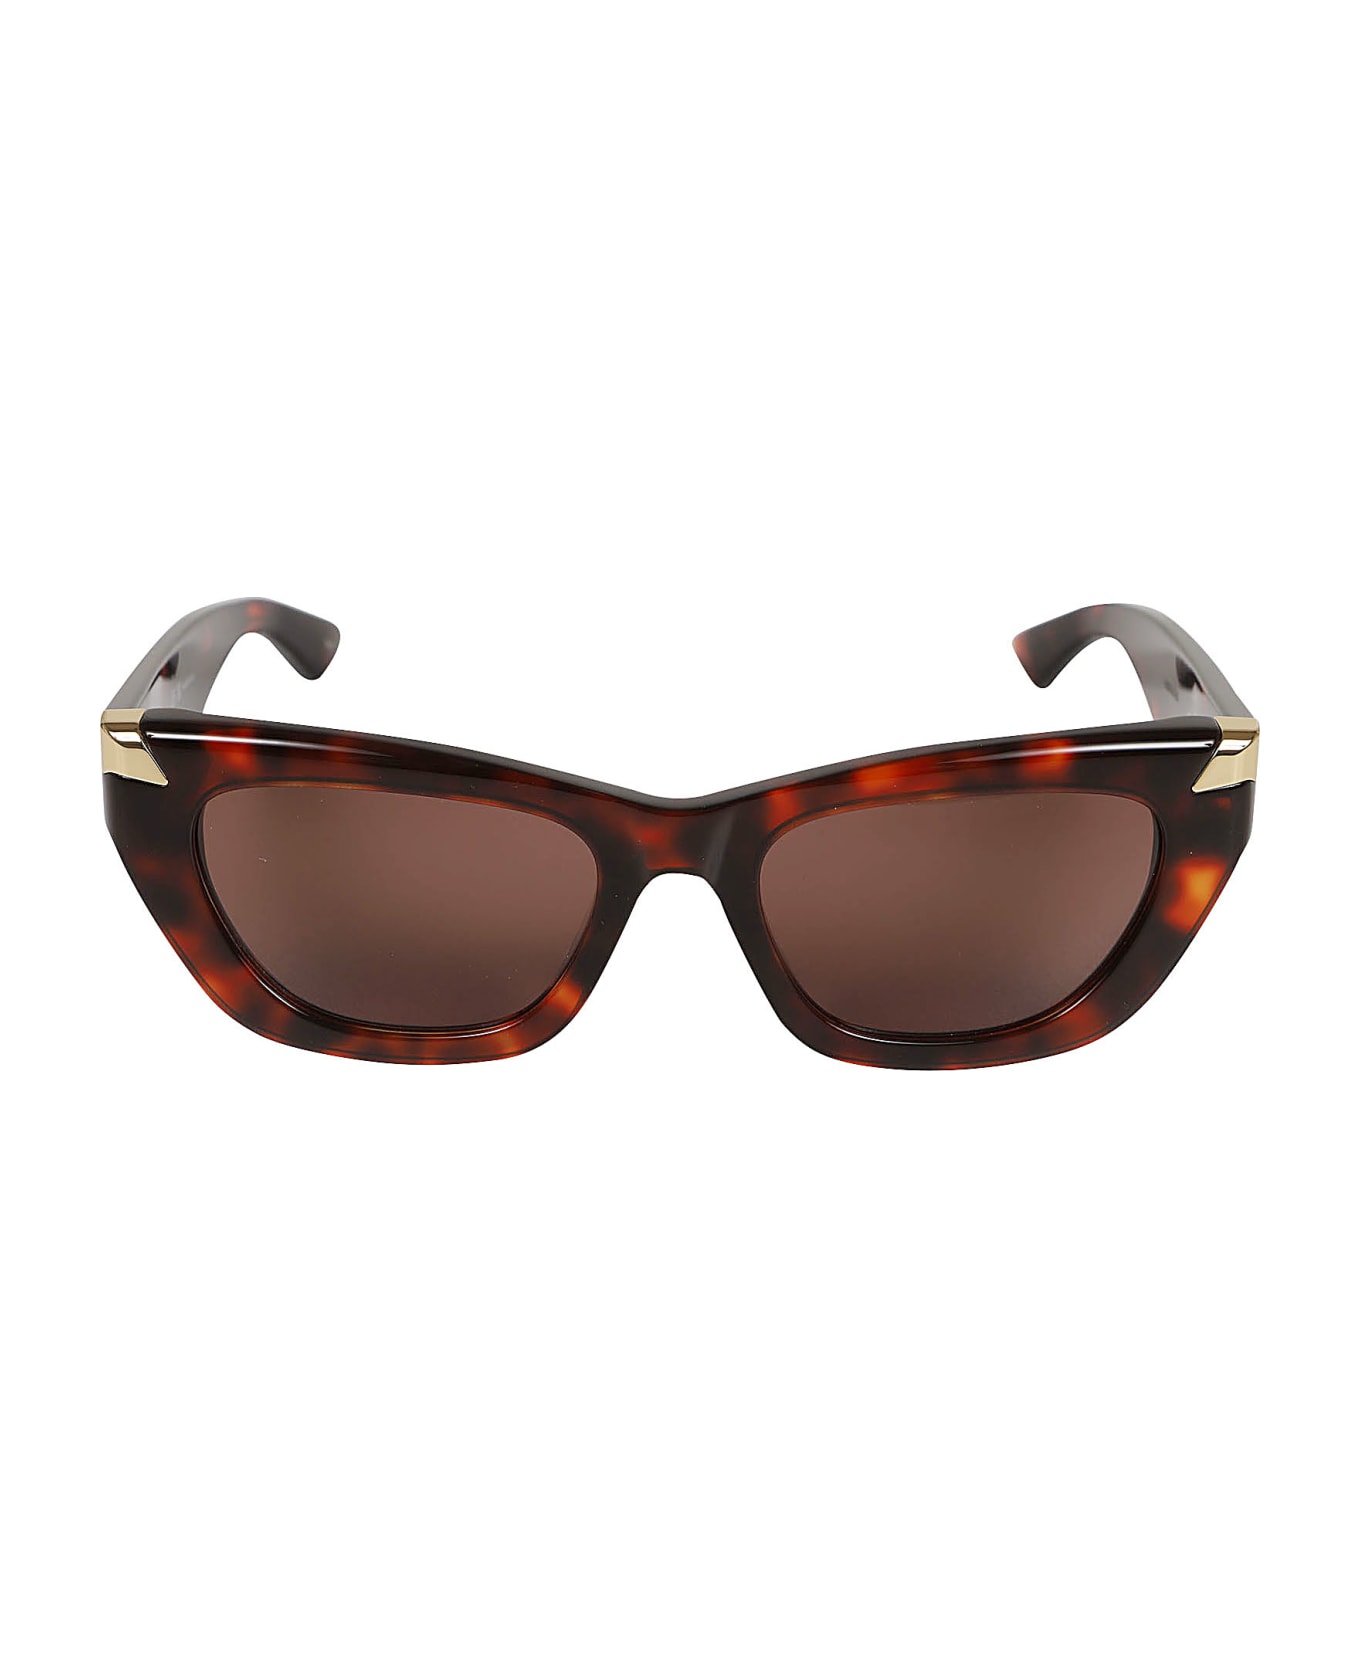 Alexander McQueen Eyewear Tortoiseshell Sunglasses - Havana Havana Brown